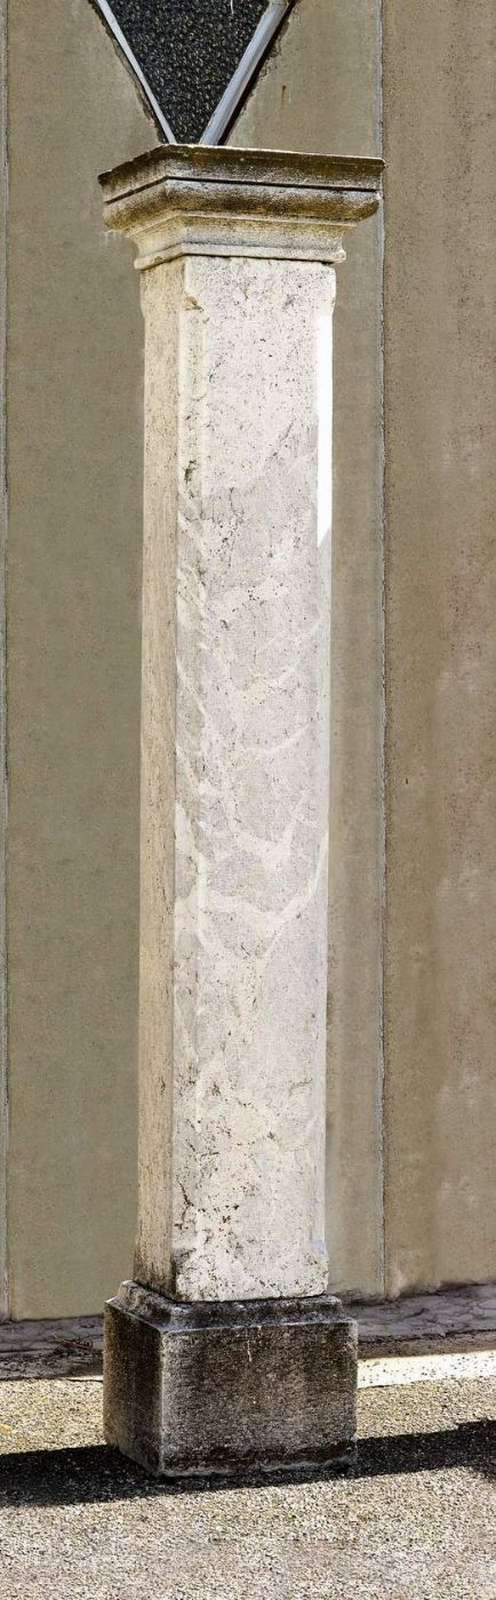 Antica colonna in marmo. Epoca 1800. - Colonne antiche - Architettura - Prodotti - Antichità Fiorillo